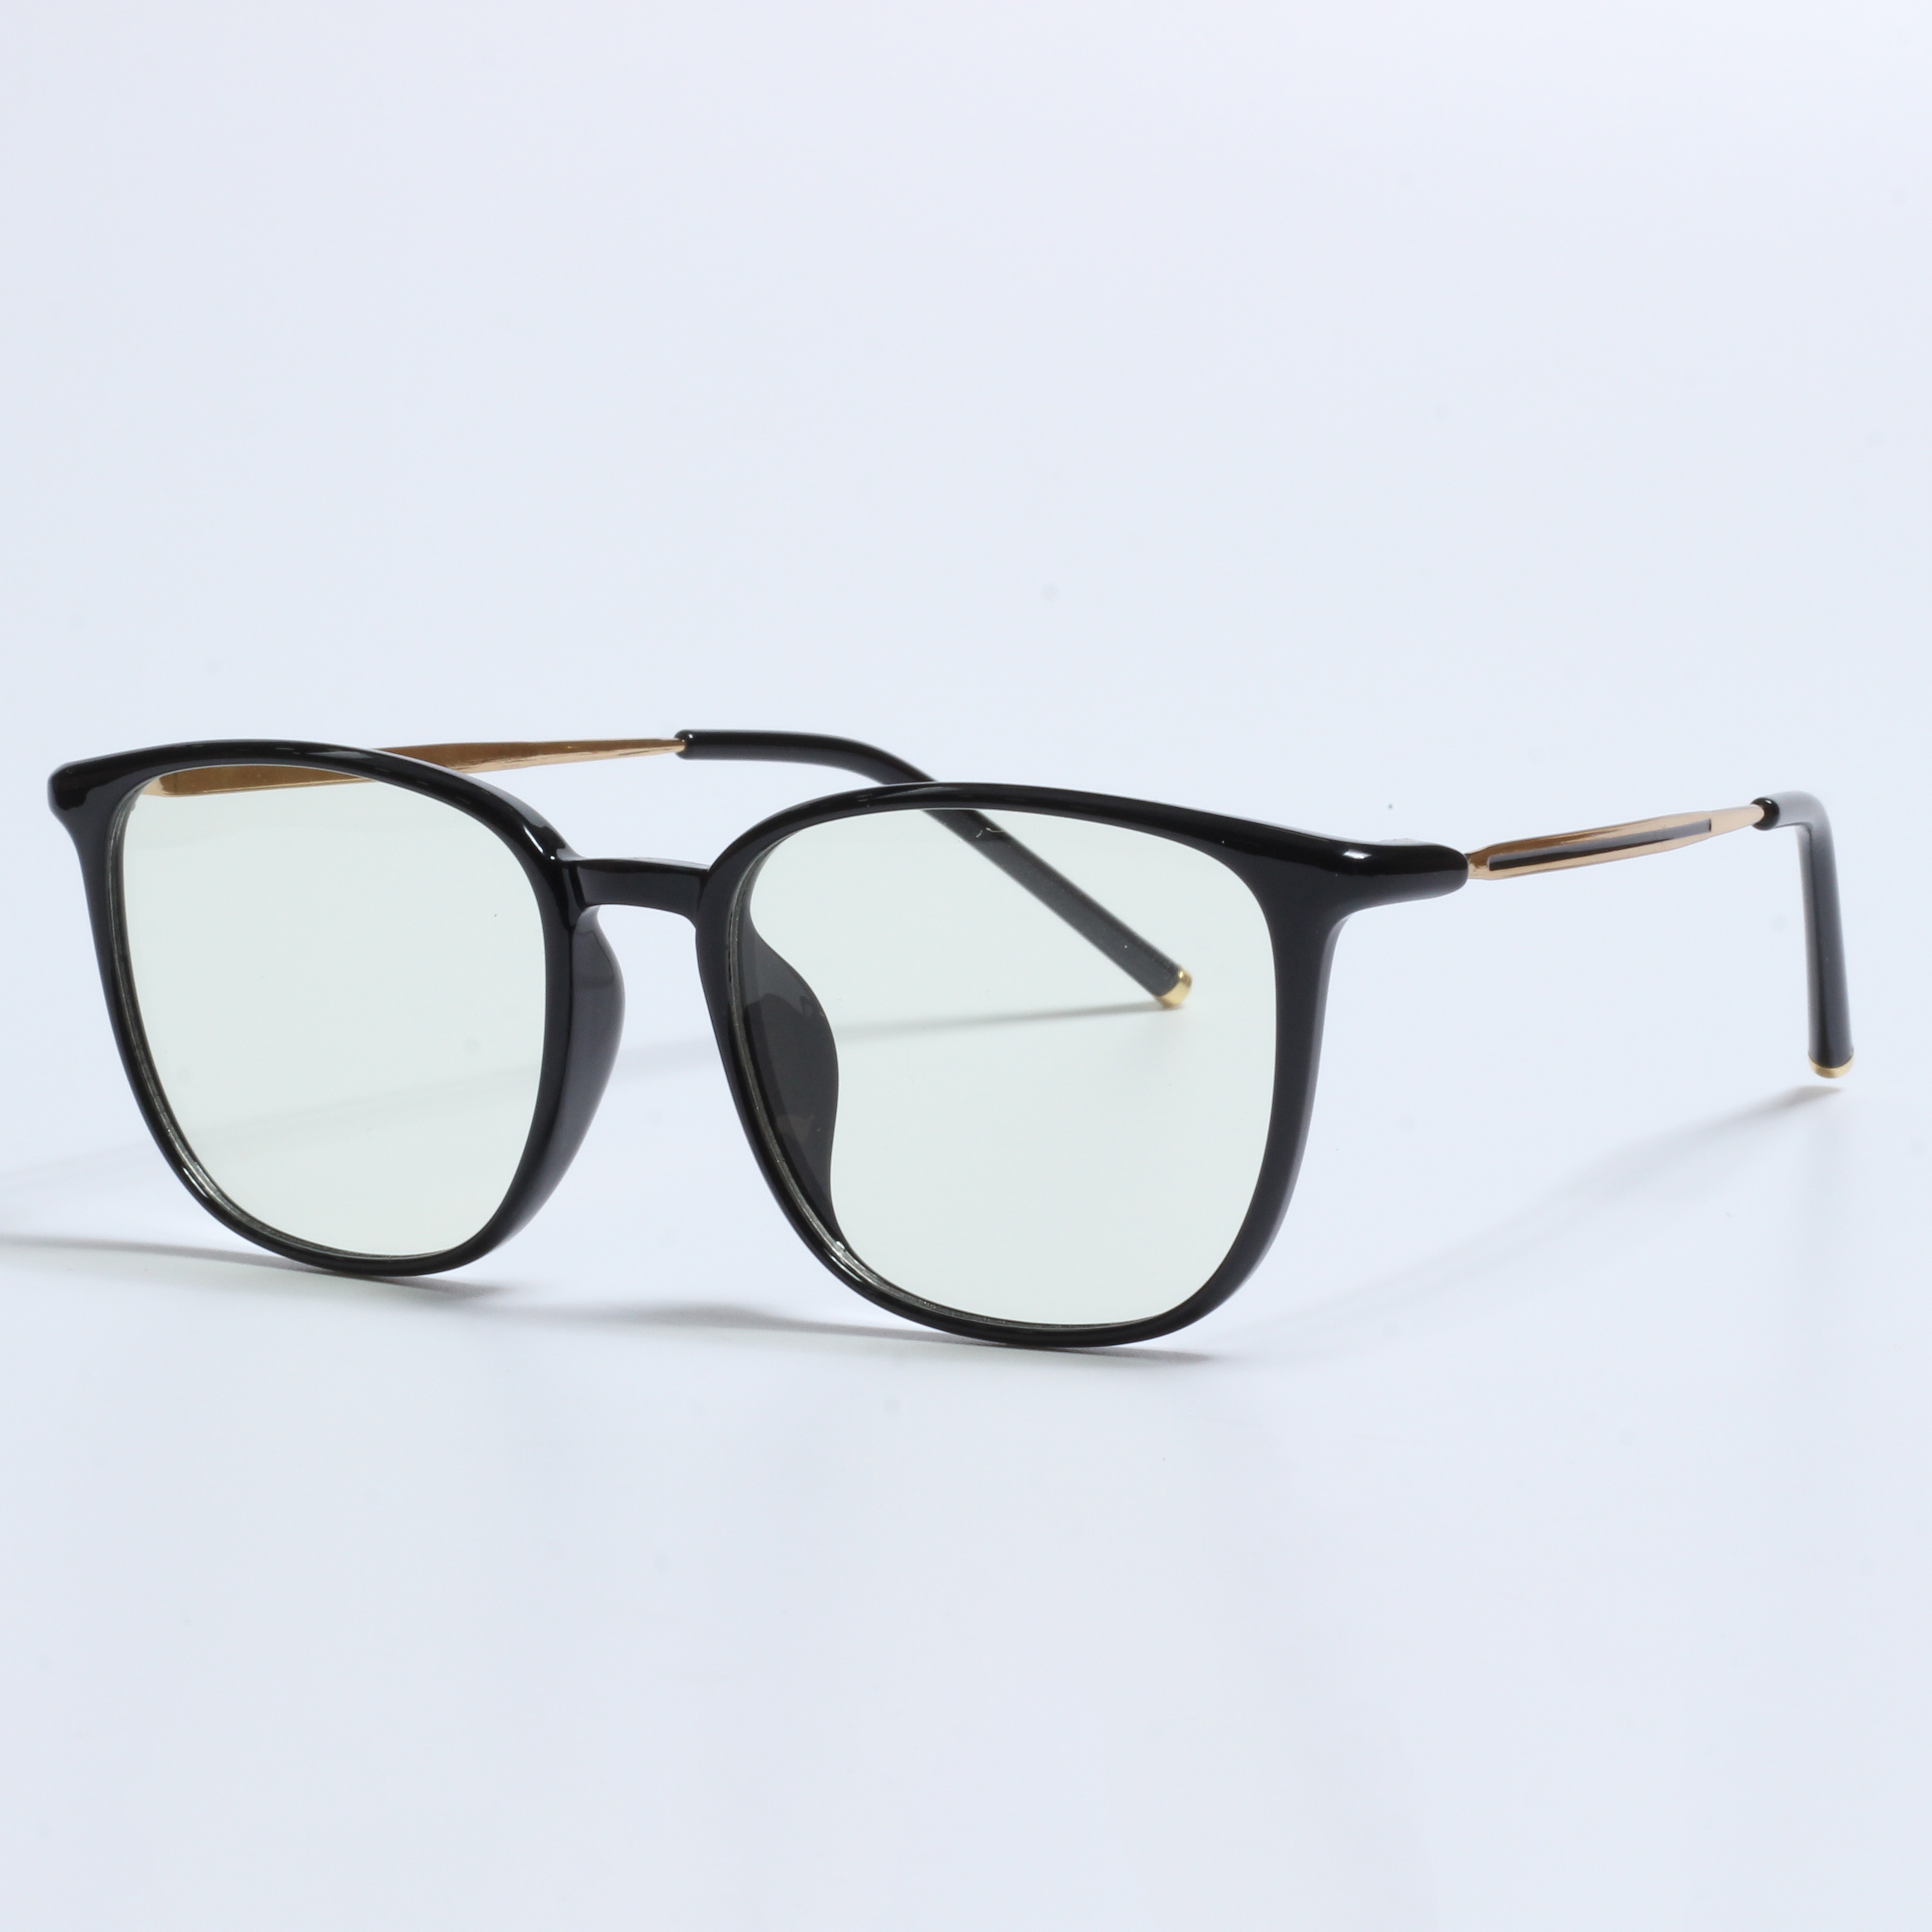 Nuovi occhiali da vista firmati retro lunetta anti lumiere (2)